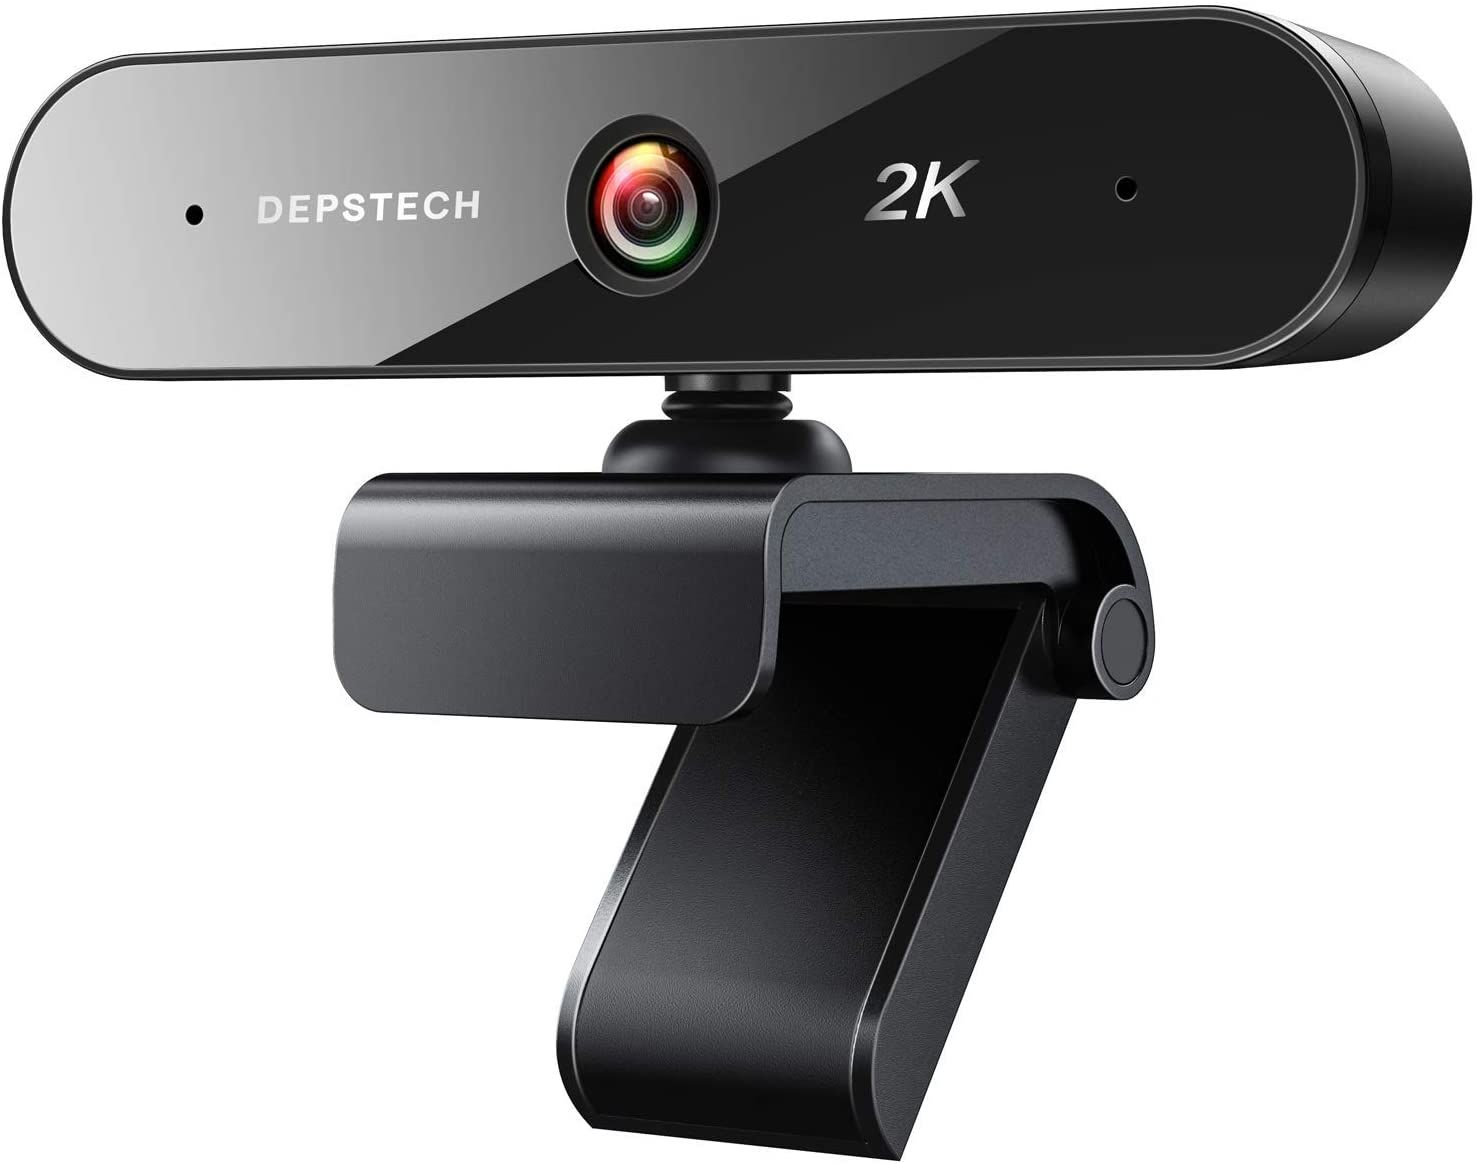 Depstech 2K QHD Webcam